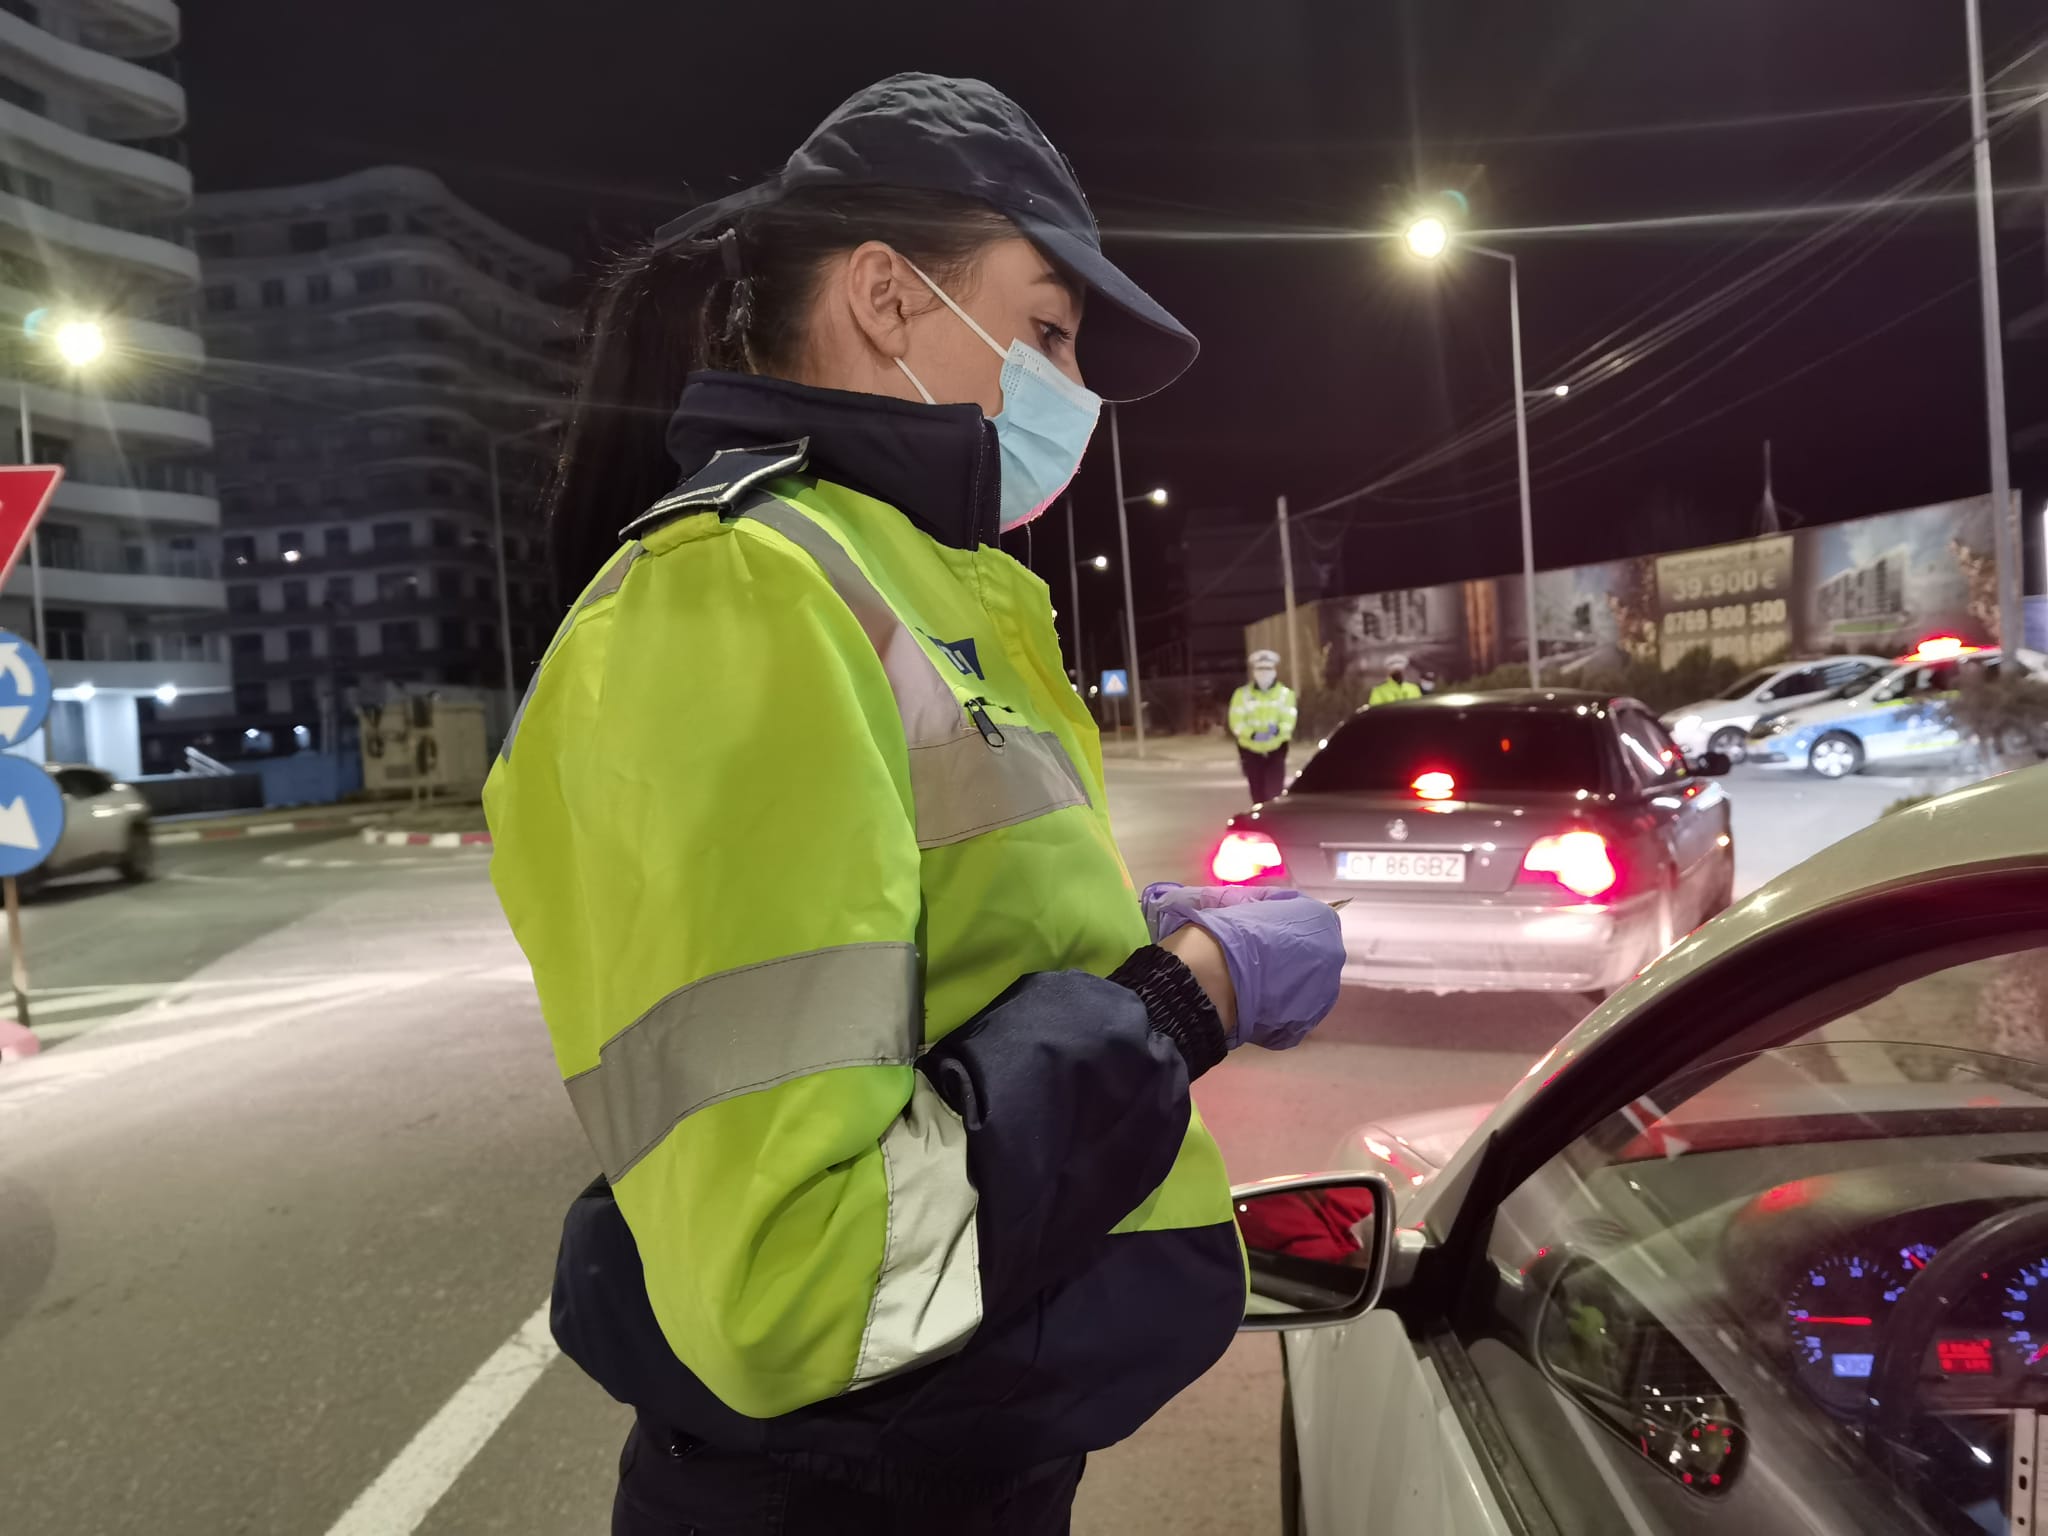 În cursul nopții trecute, polițiști din cadrul Poliției orașului Năvodari au organizat o acțiune pe linia prevenirii și limitării răspândirii infecției cu noul coronavirus, precum și pentru prevenirea și combaterea încălcării legislației rutiere.